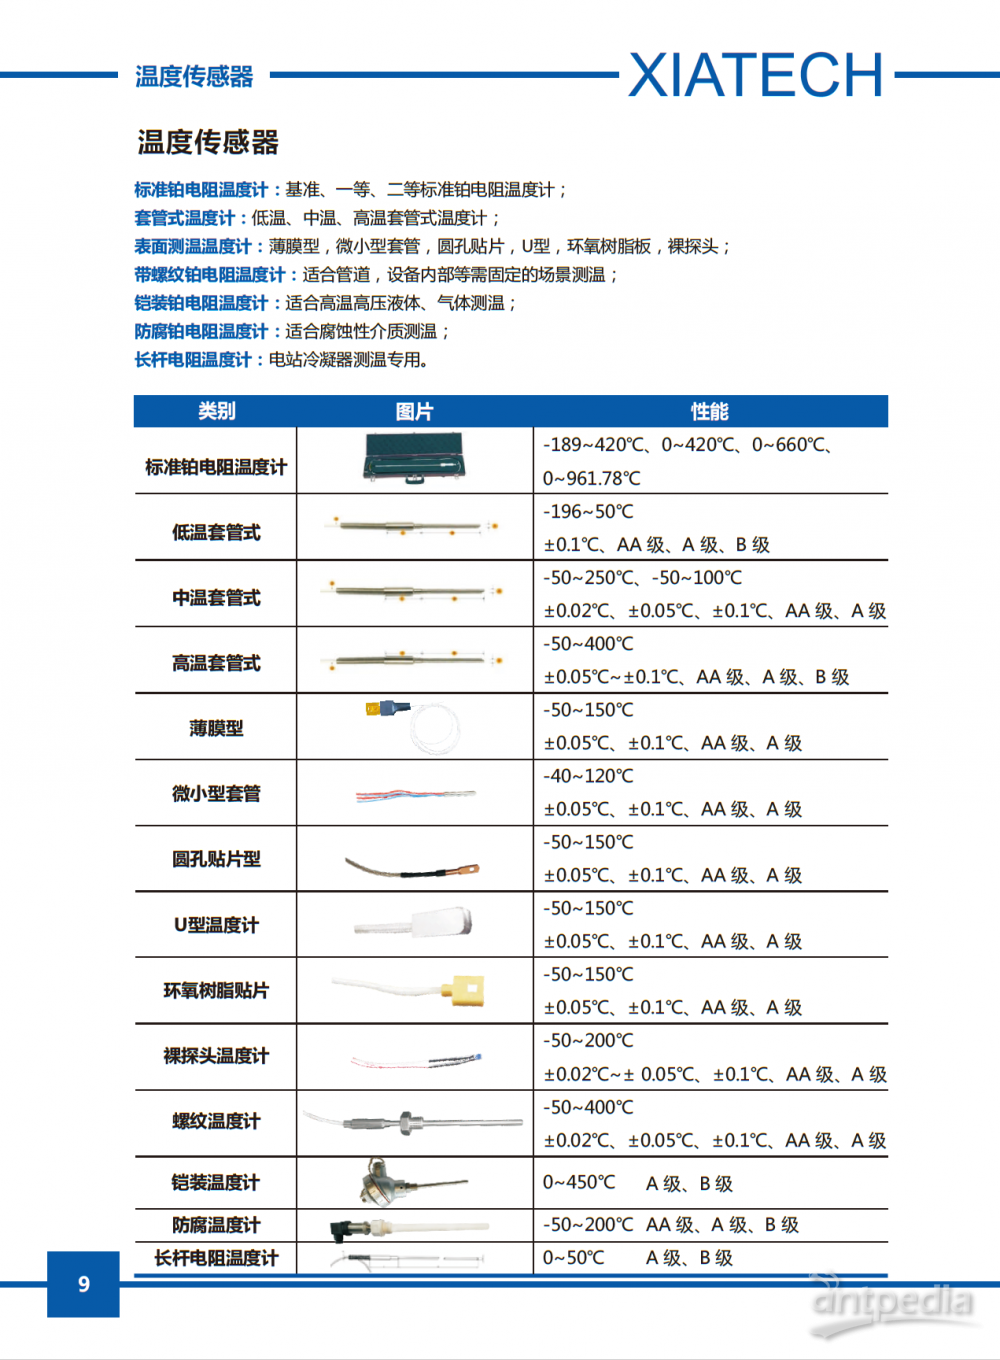 温度传感器 产品彩页-XIATECH.png